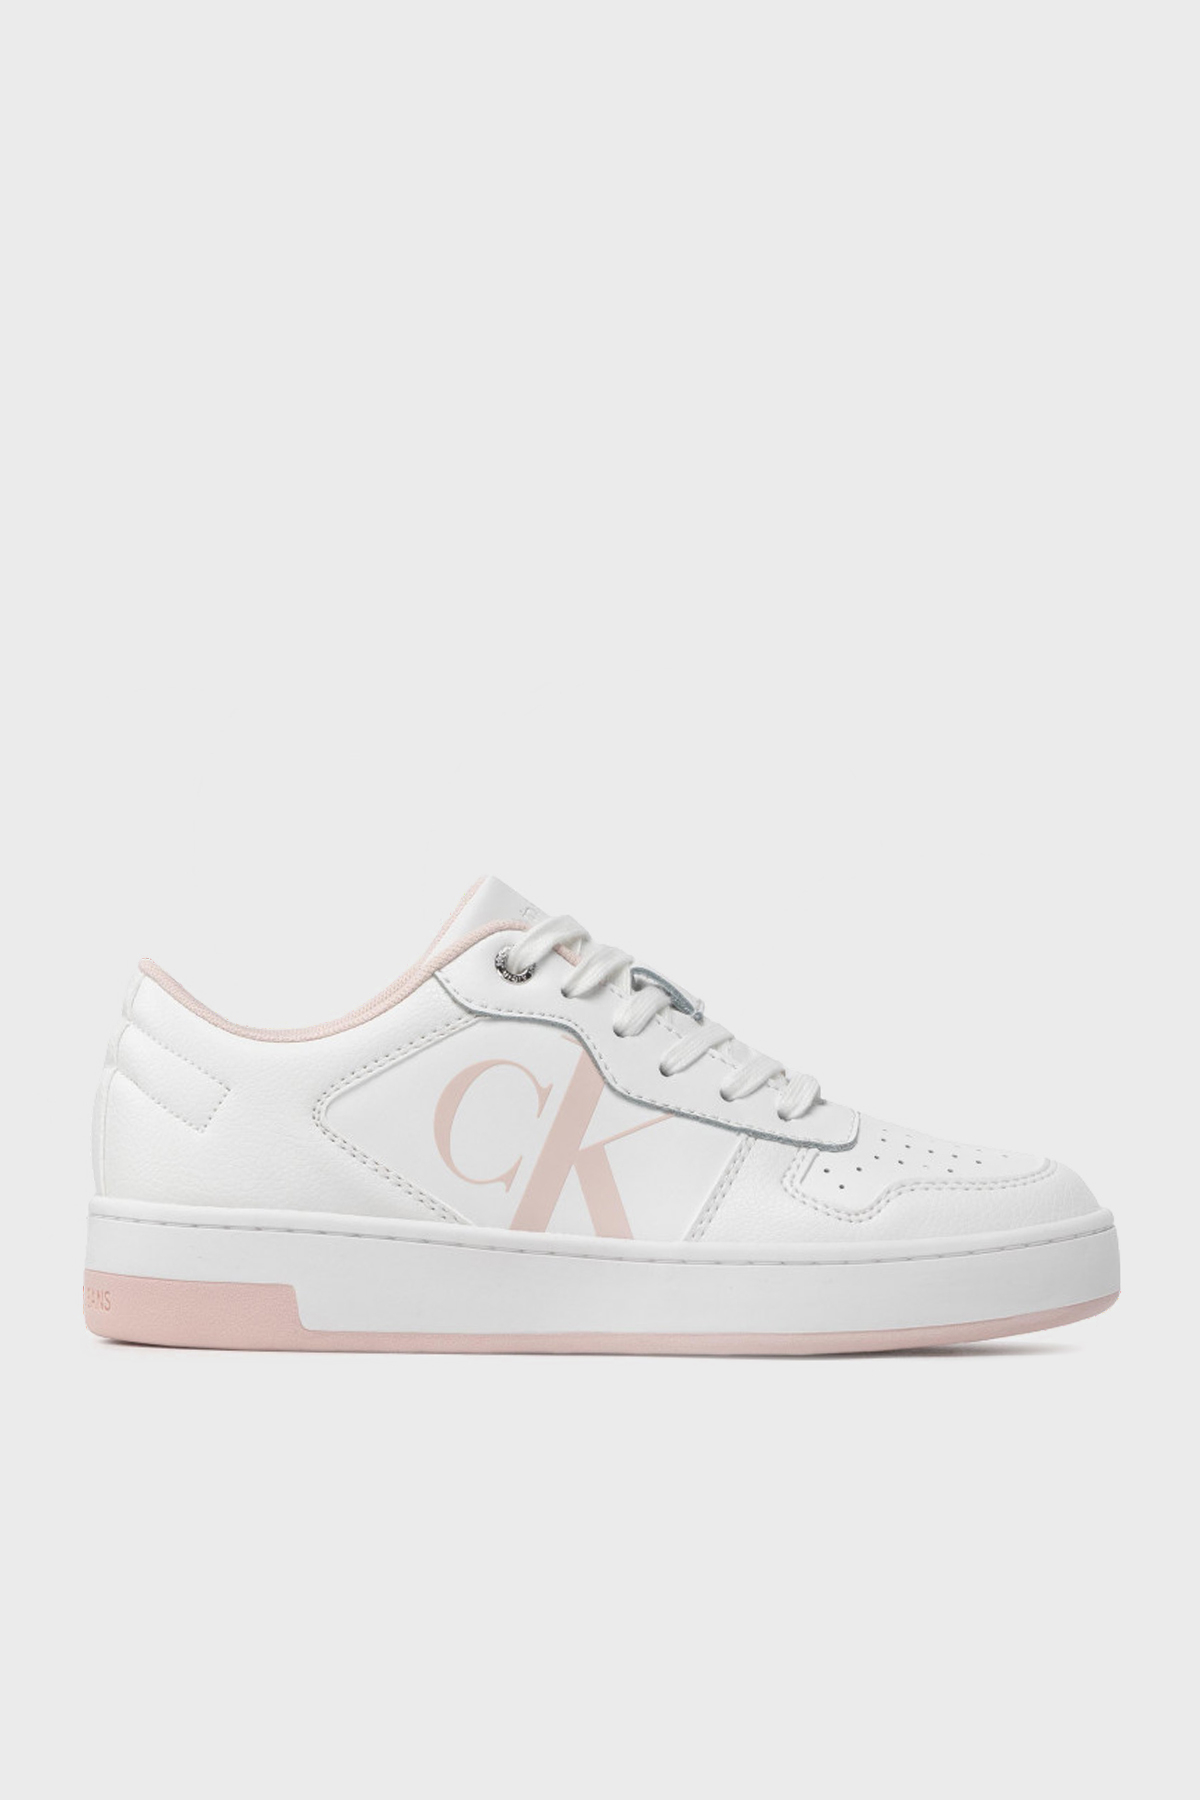 Calvin Klein Logolu Hakiki Deri Sneaker Bayan Ayakkabı YW0YW00692 0K6 BEYAZ